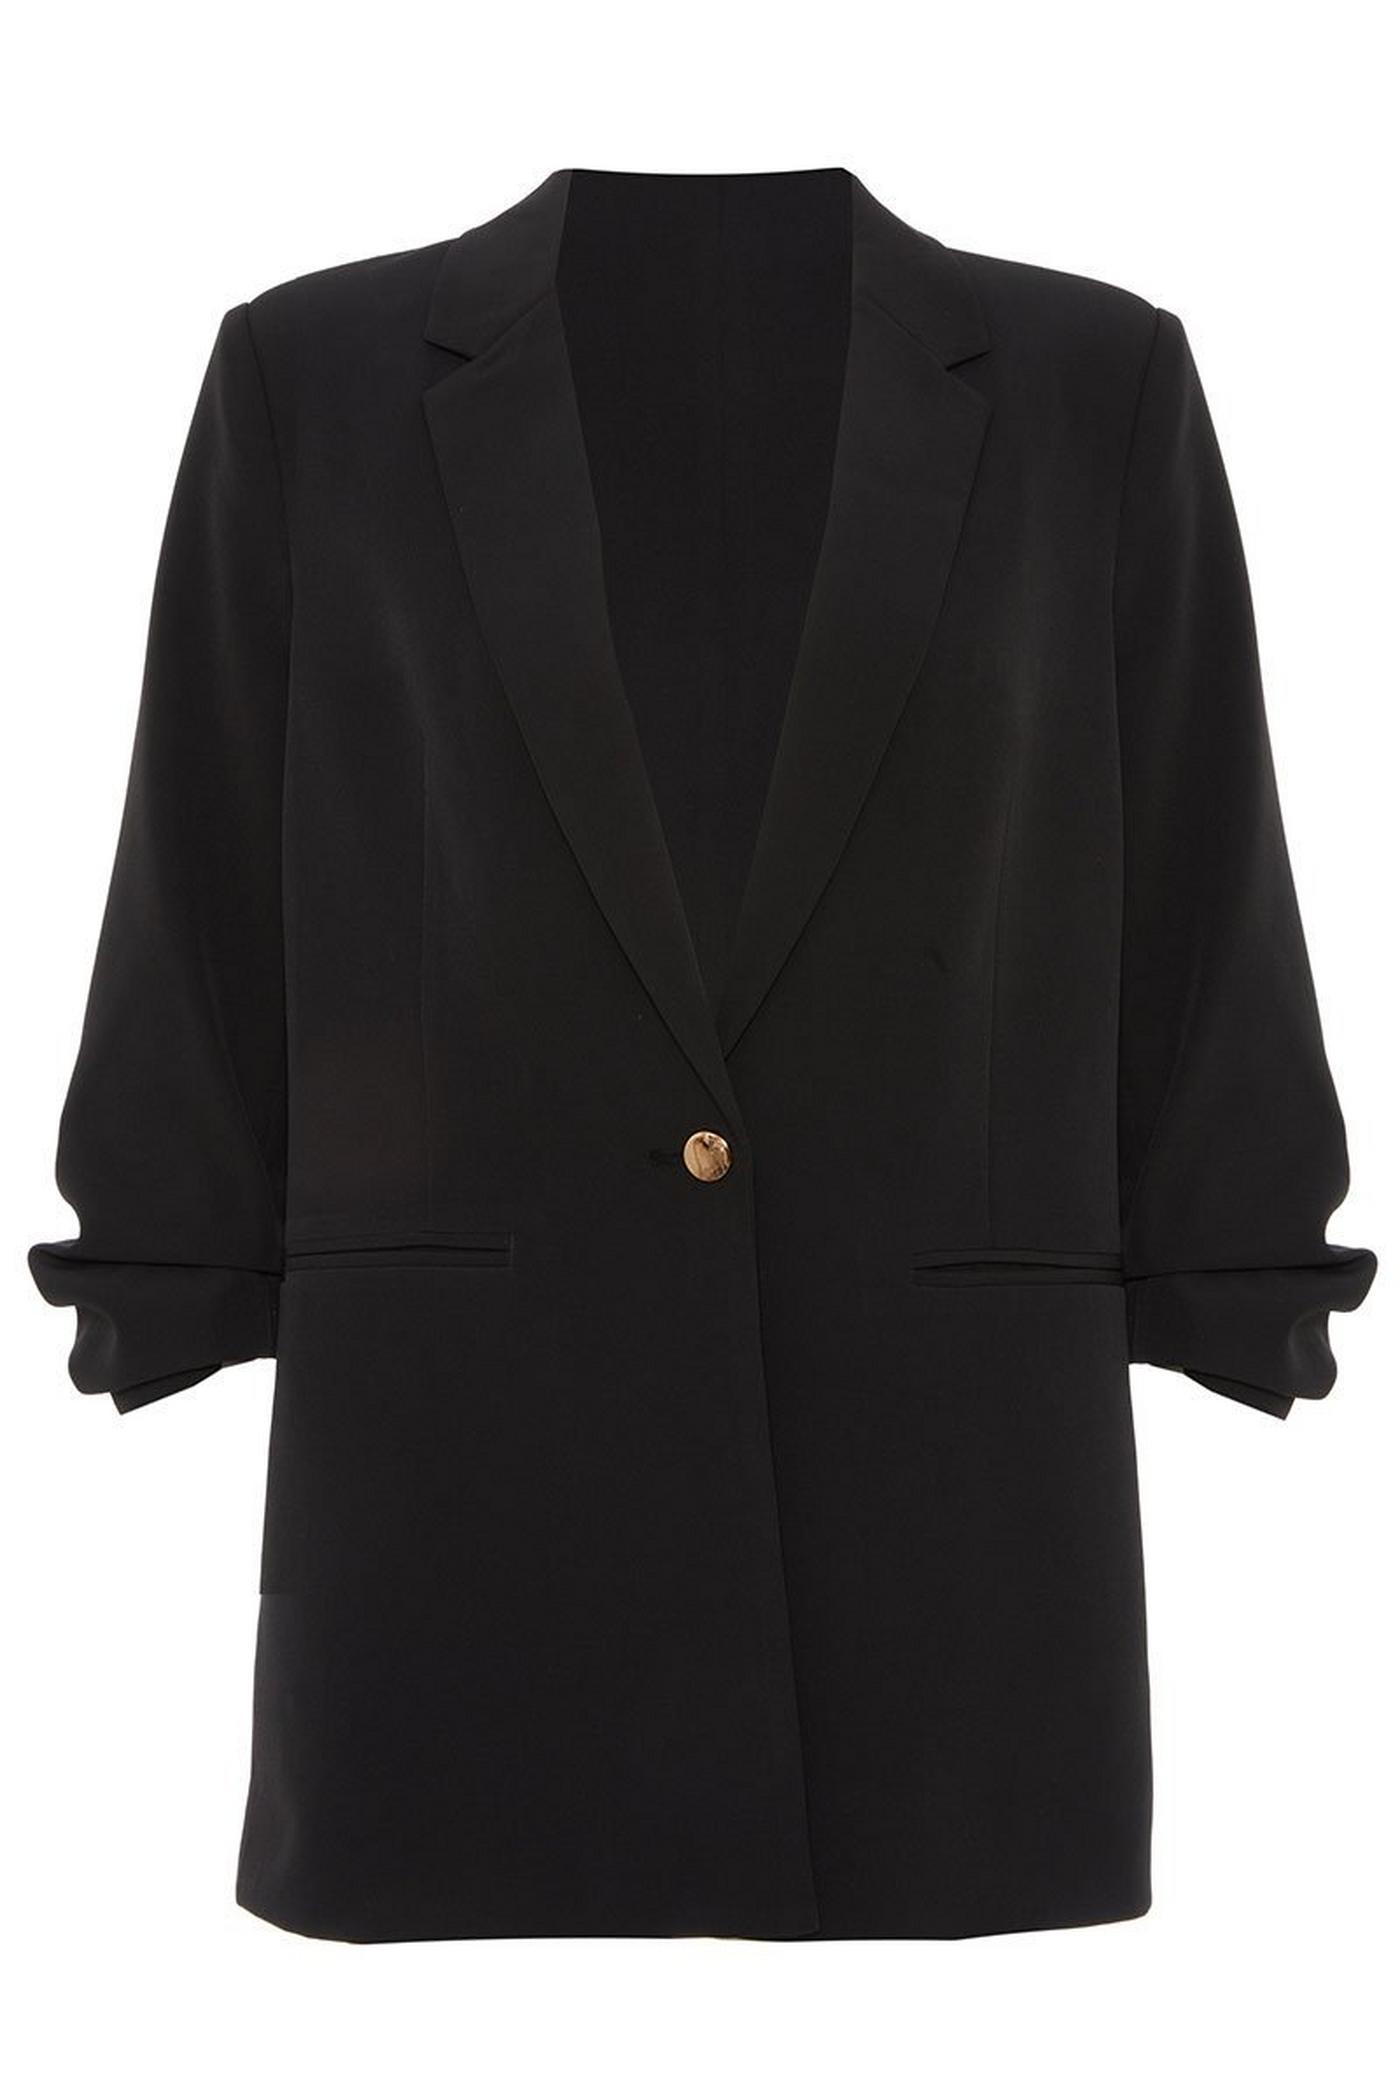 Black 3/4 Button Suit Jacket